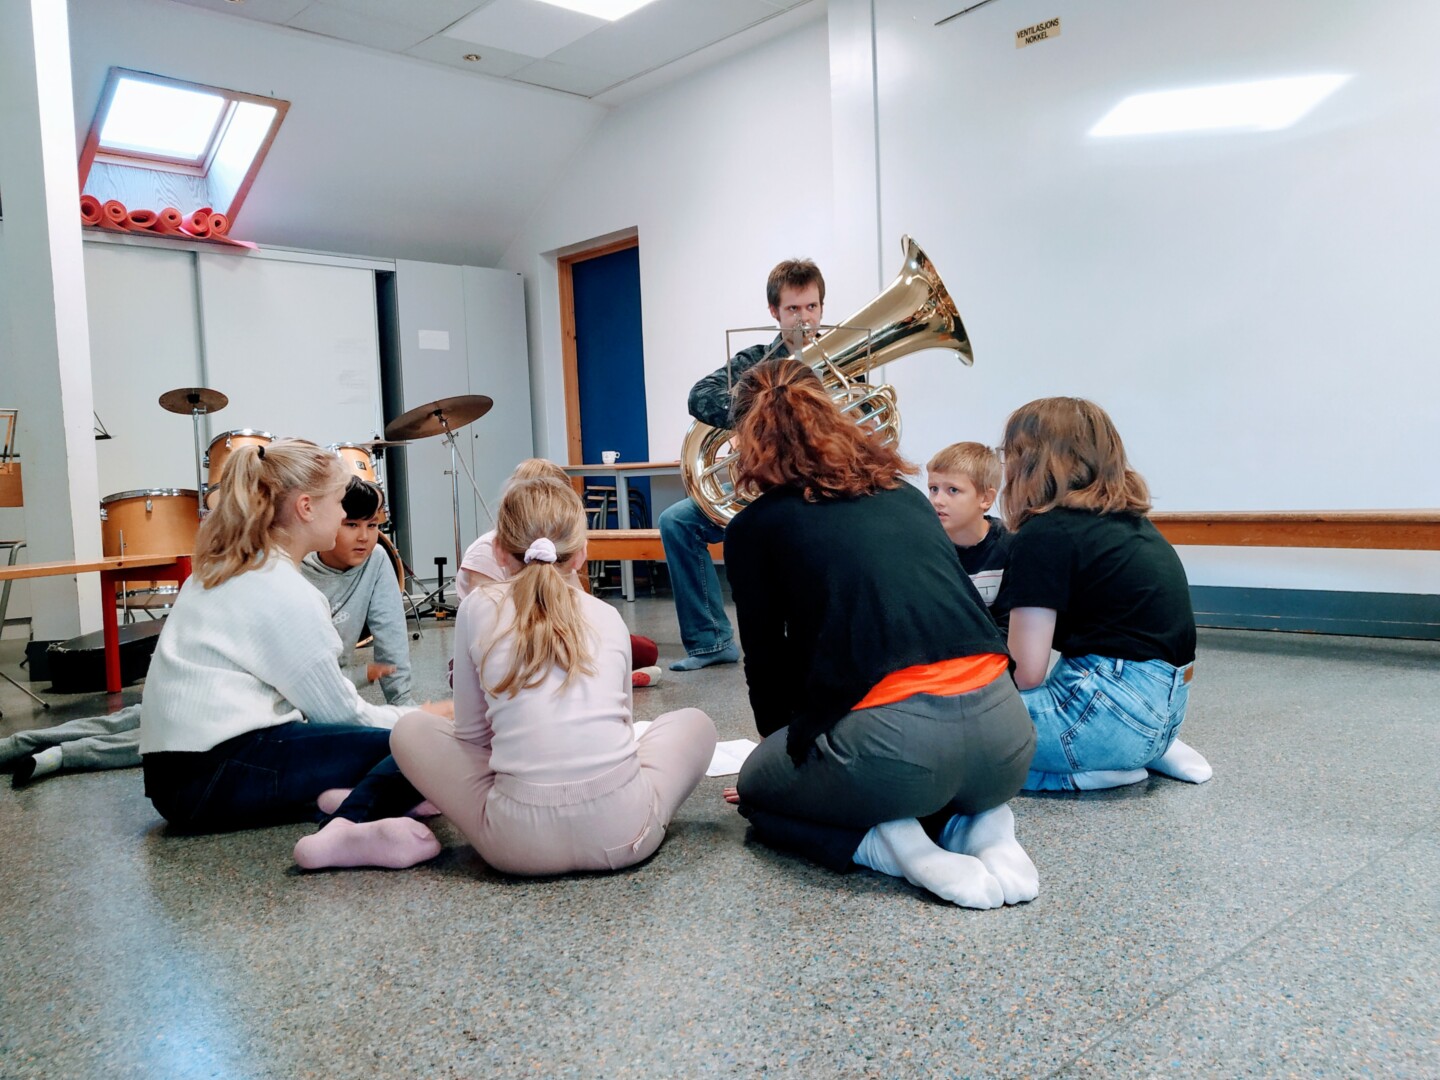 MUSIKERE OG DANSERE I SAMSPILL: Tre musikere og tre dansere samarbeidet om prosjektet på Storhaug skole. Her ser vi Henrik Andreas Kleveland foran elevene.